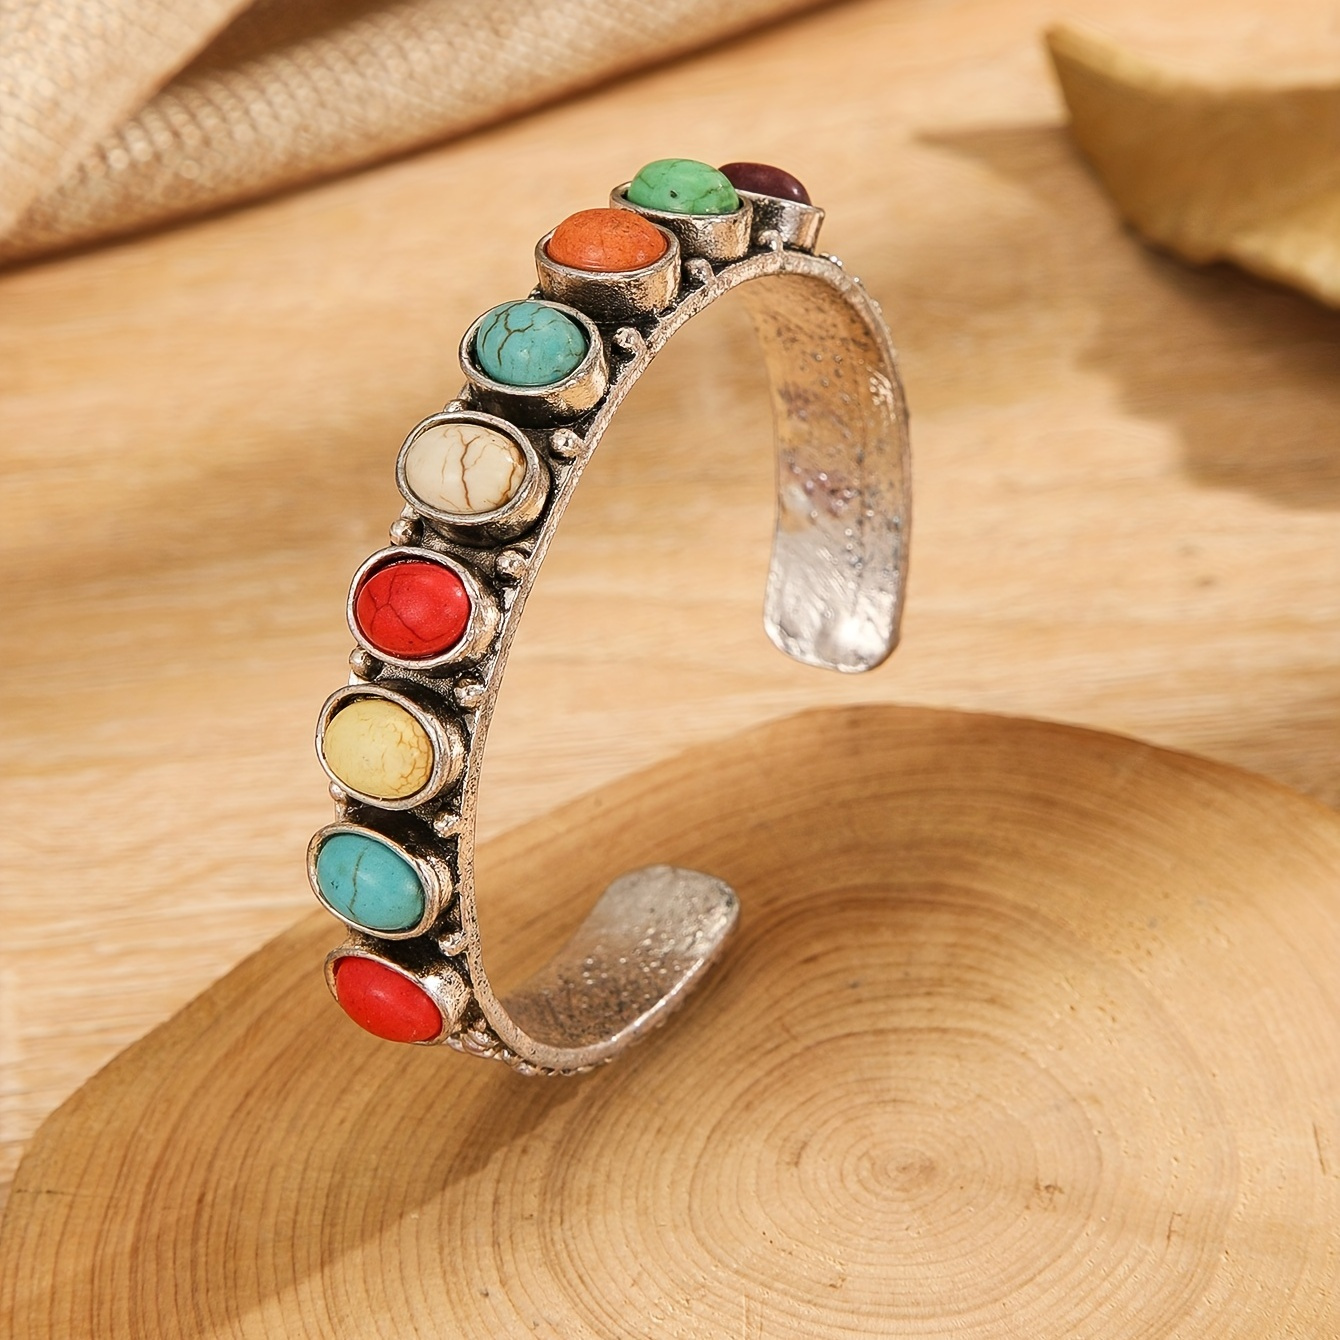 

Boho Style Colorful Turquoise Cuff Bangle Bracelet Vintage Style Hand Jewelry